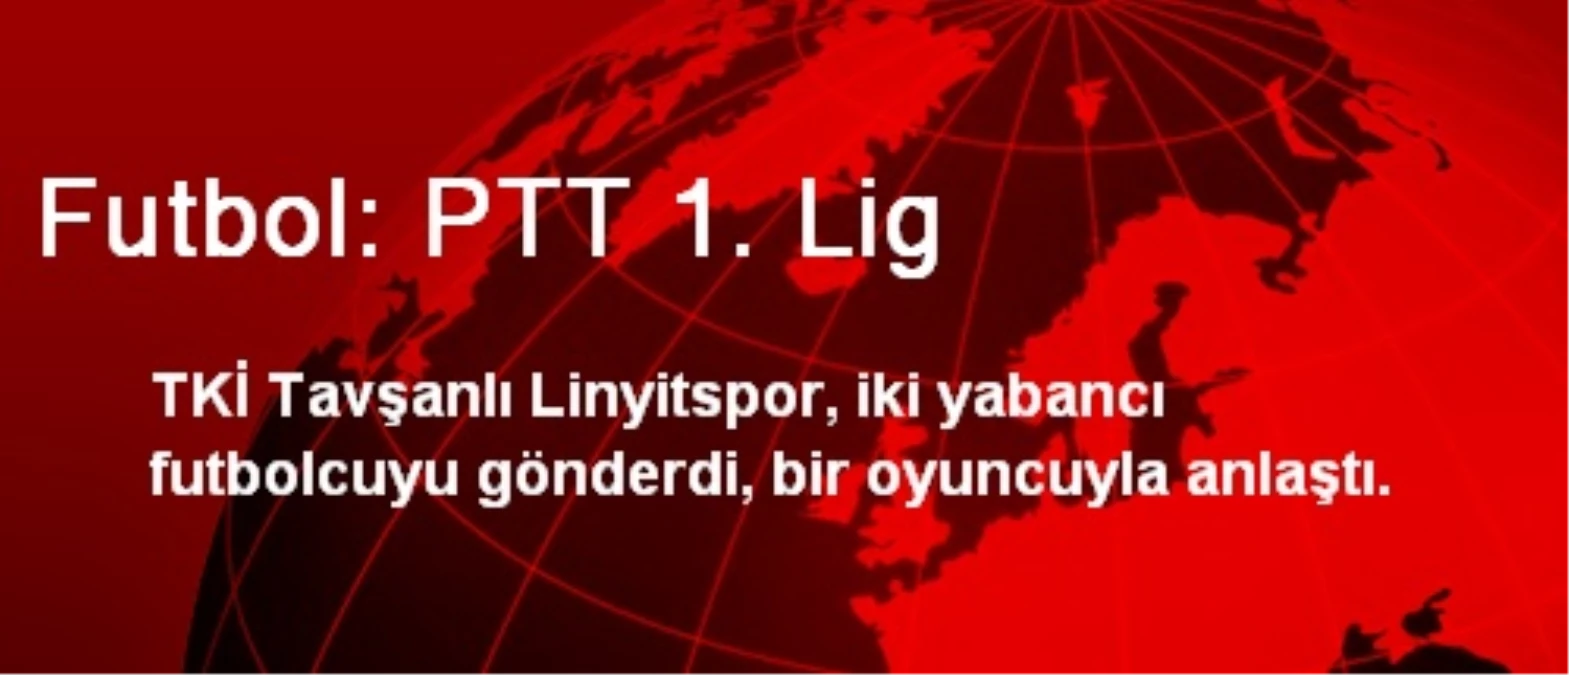 Futbol: PTT 1. Lig